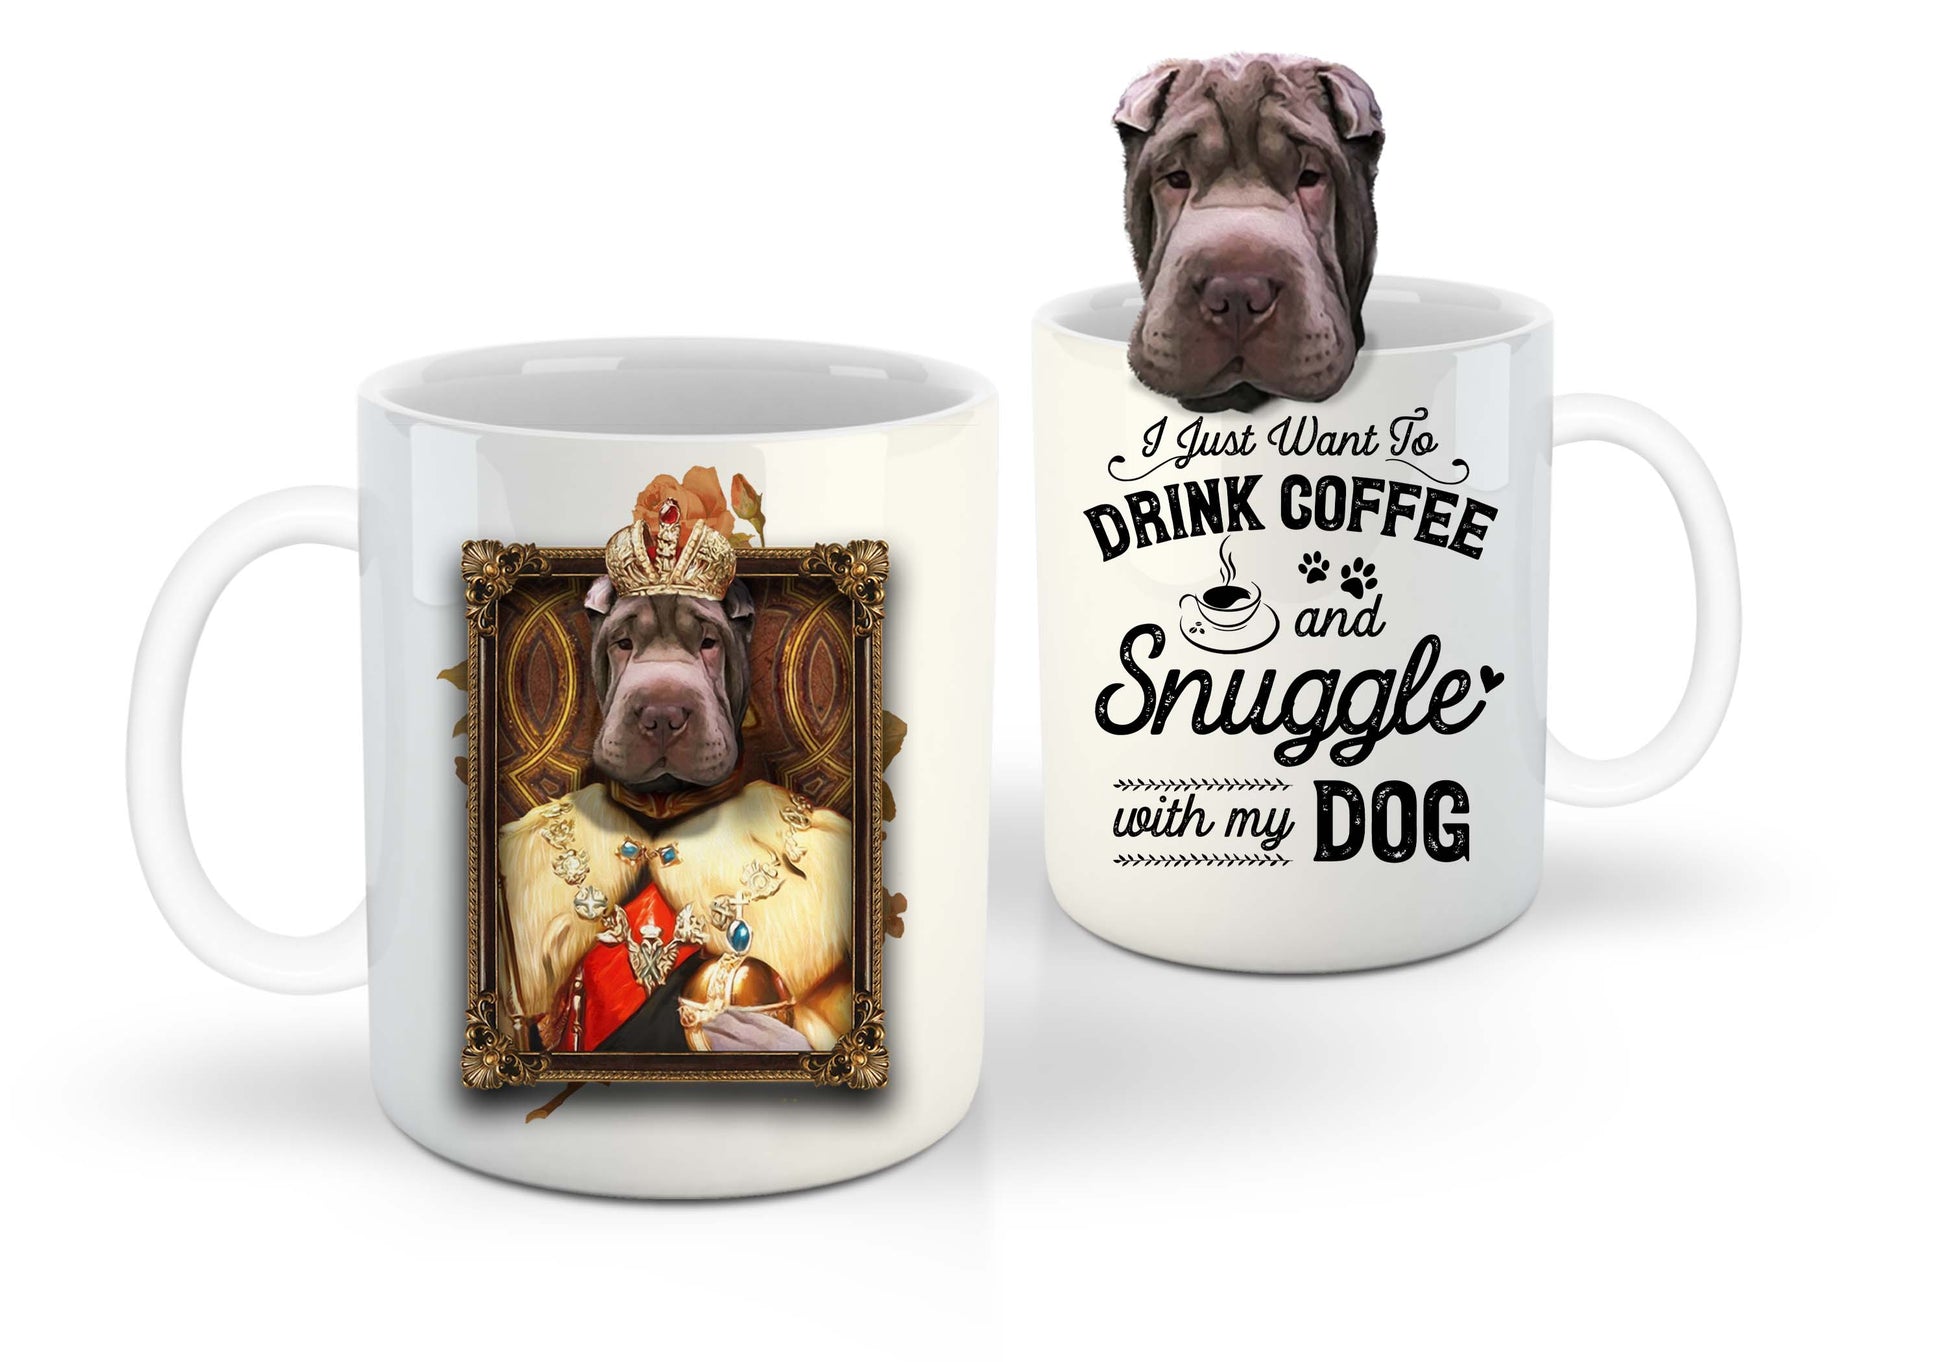 The King Custom Pet Mug - Noble Pawtrait